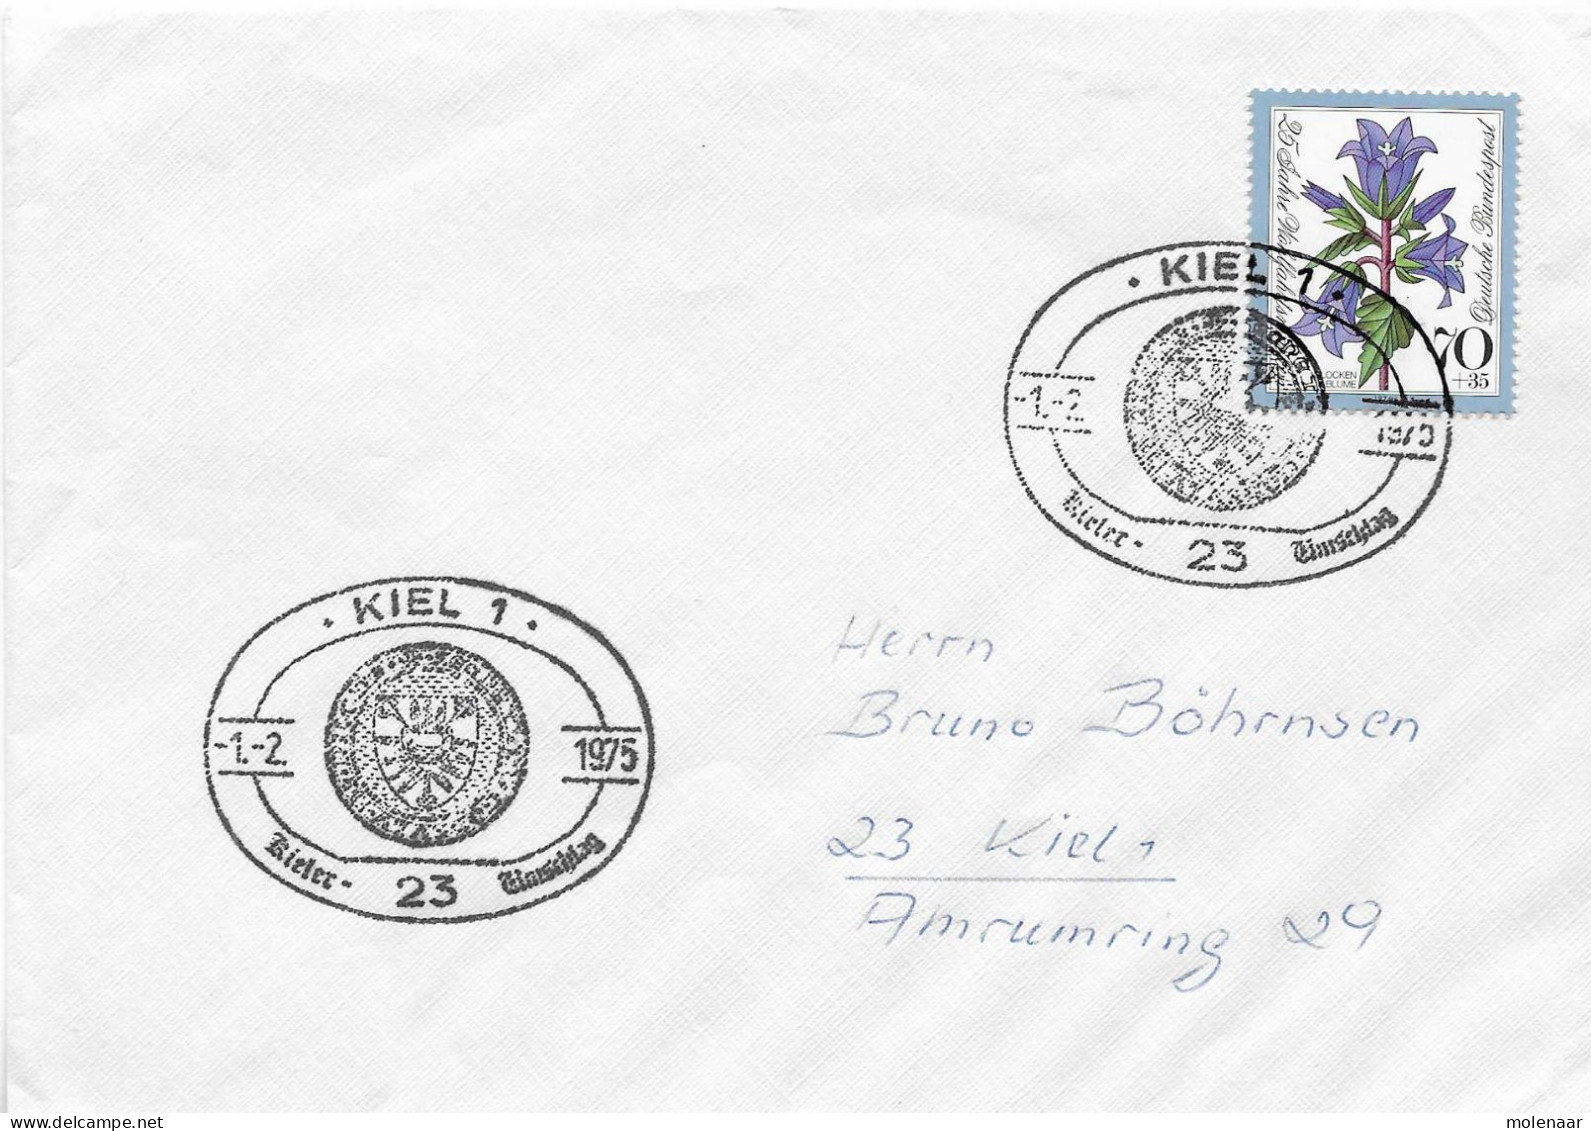 Postzegels > Europa > Duitsland > West-Duitsland > 1970-1979 > Brief Met No. 821 (17299) - Lettres & Documents